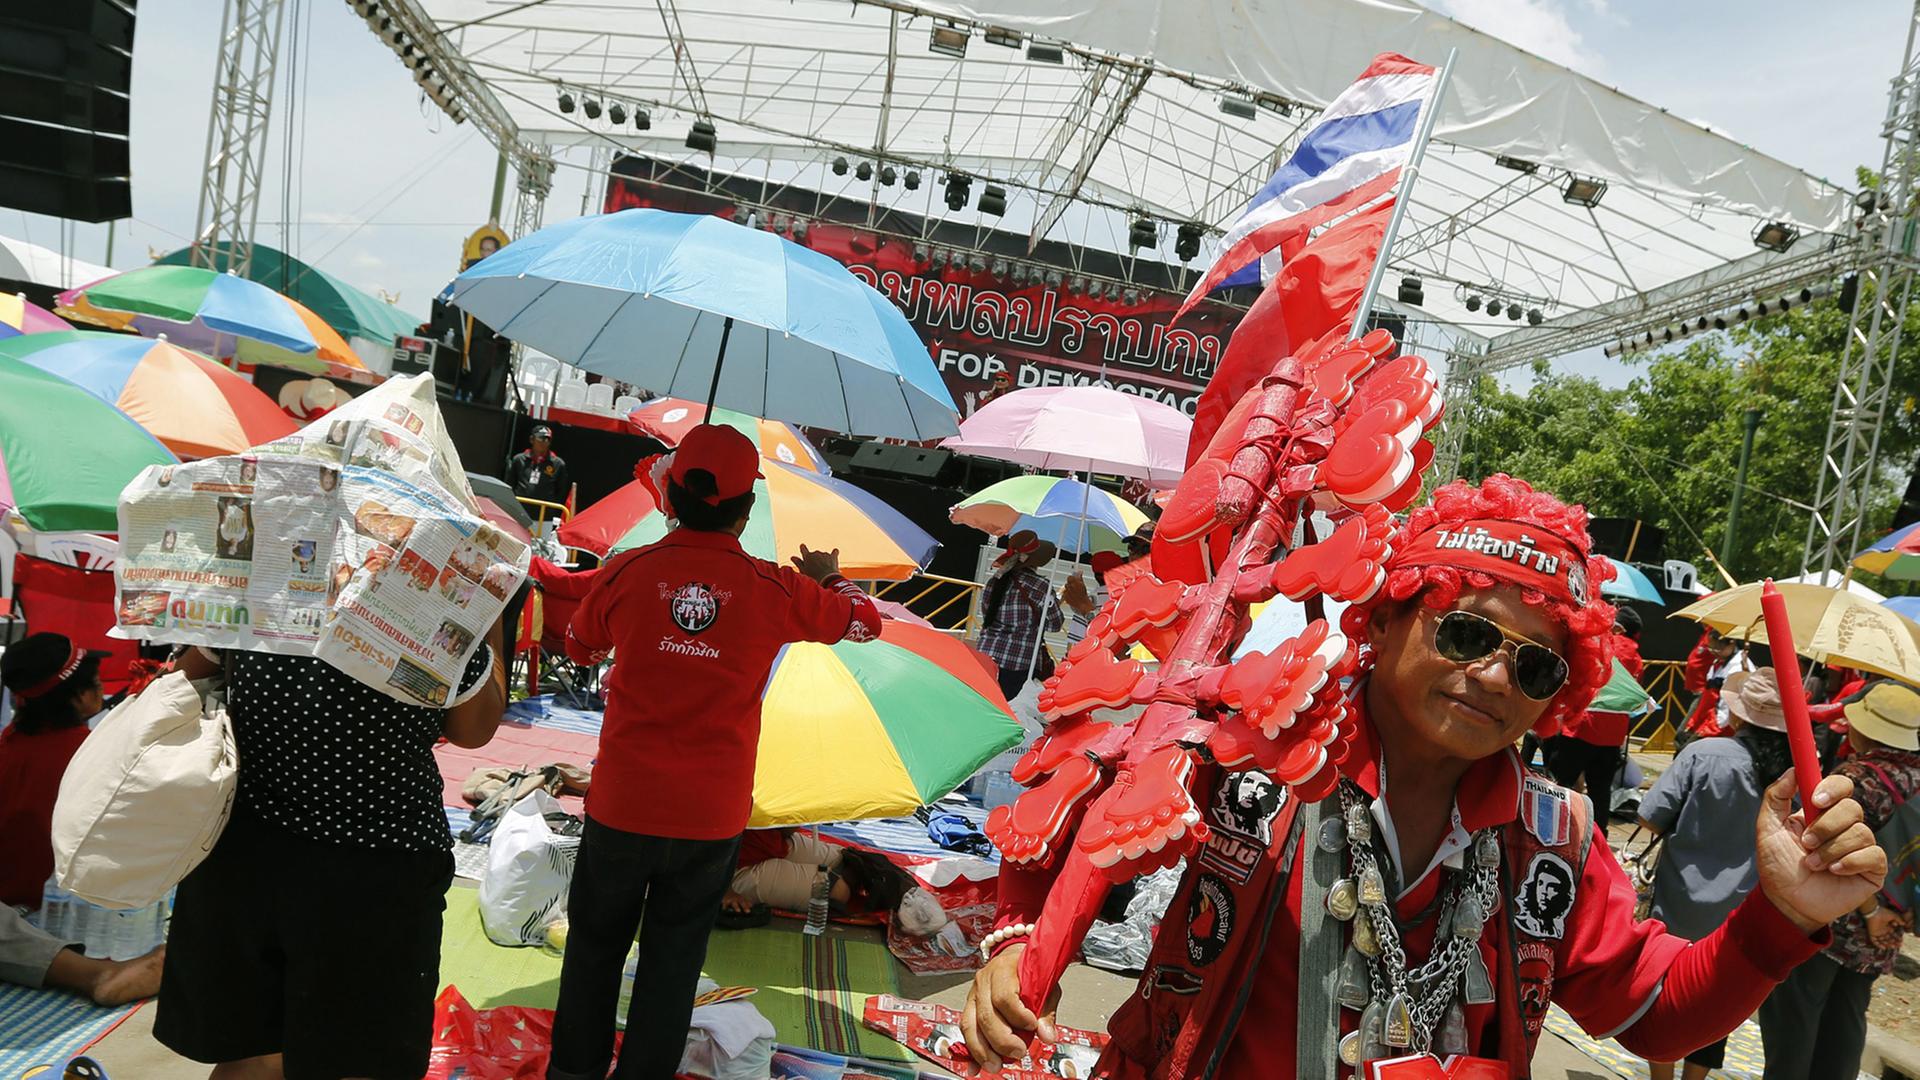 Ein in rot gekleideter Demonstrant mit Sonnenbrille und Thailand-Flagge schwenkt einen roten Stift, hinter ihm unter Sonnenschirmen Dutzende Menschen, die auf eine Bühne schauen